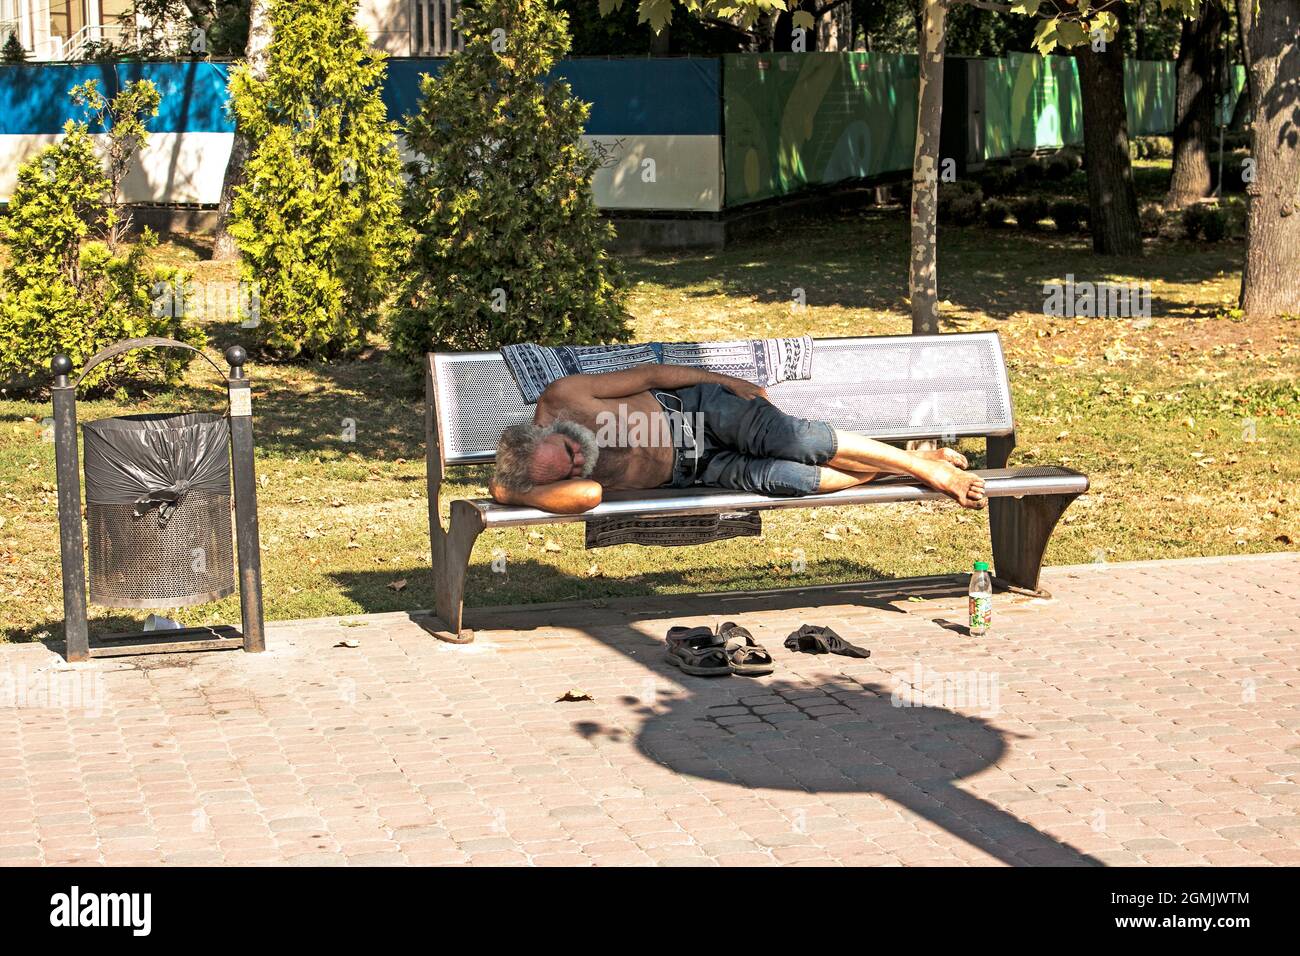 Dnepropetrovsk, UKRAINE - 09.13.2021: Un mendiant sans-abri dort sur un banc de parc. Problème social. Mendiants - chômeurs, réfugiés, émigrants. Banque D'Images